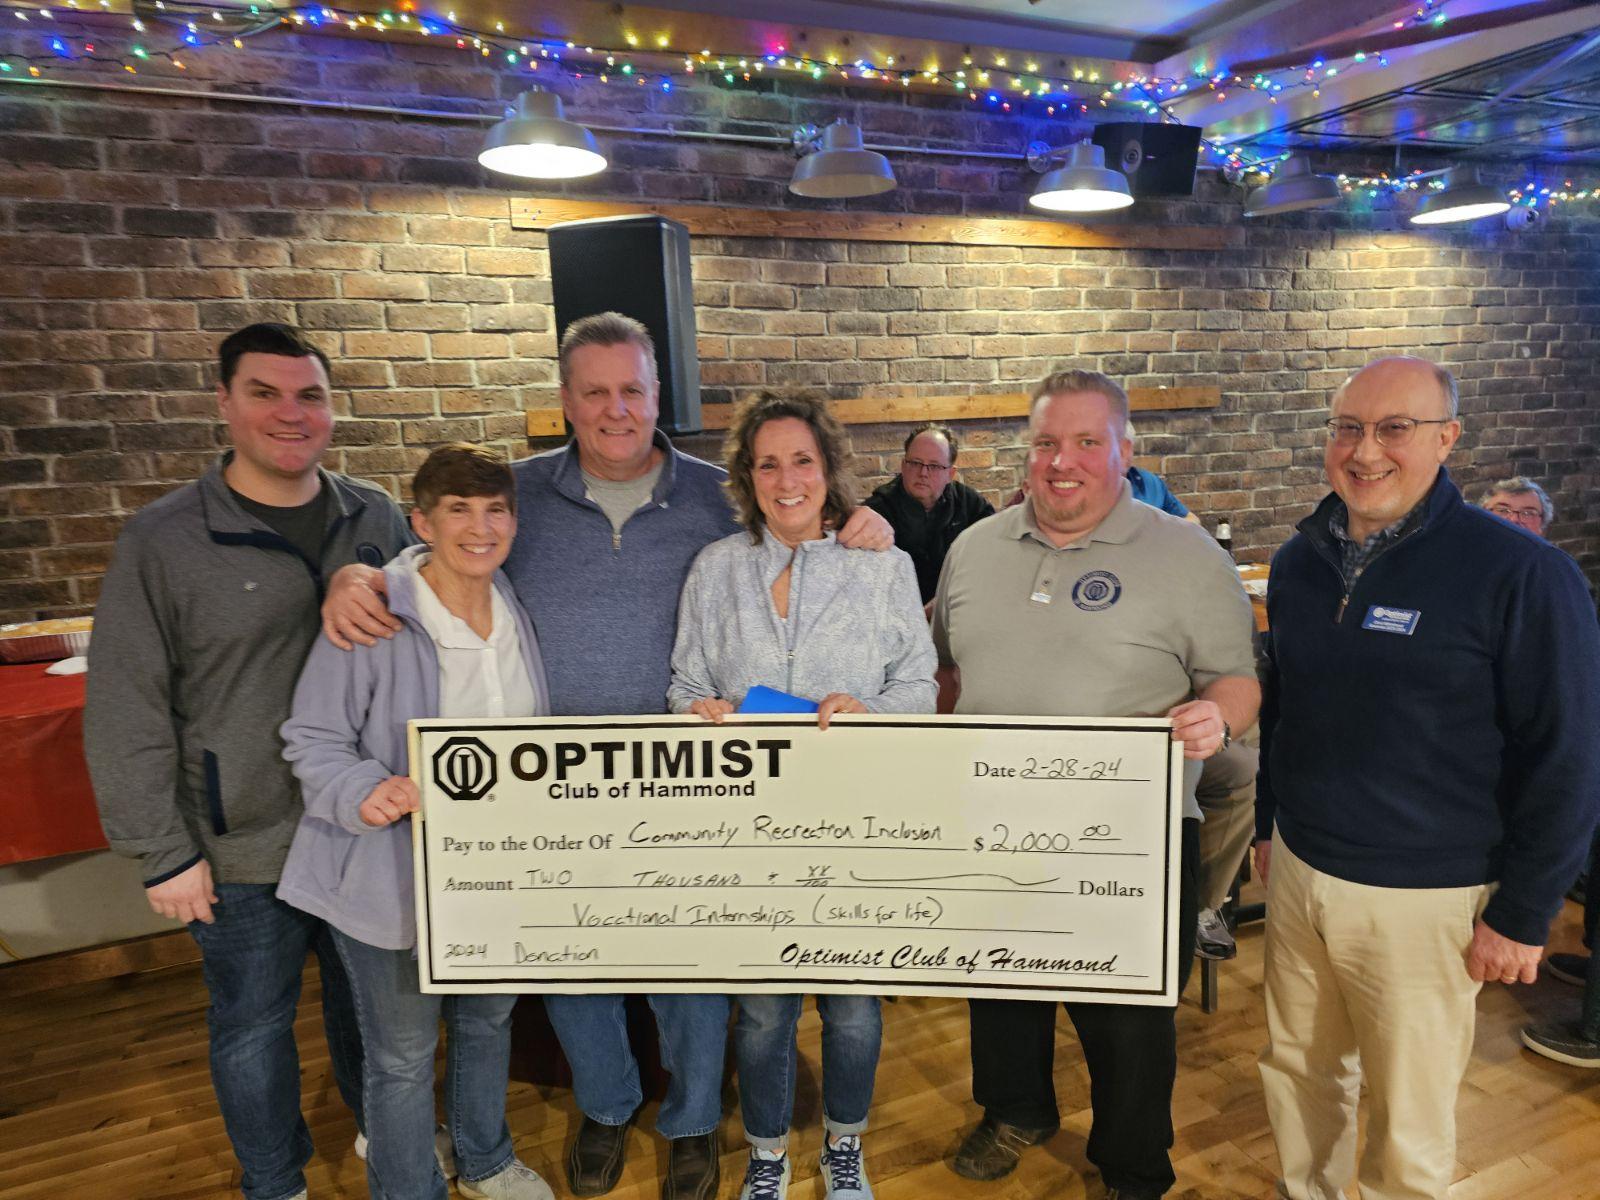 Optimist Club of Hammond, Indiana